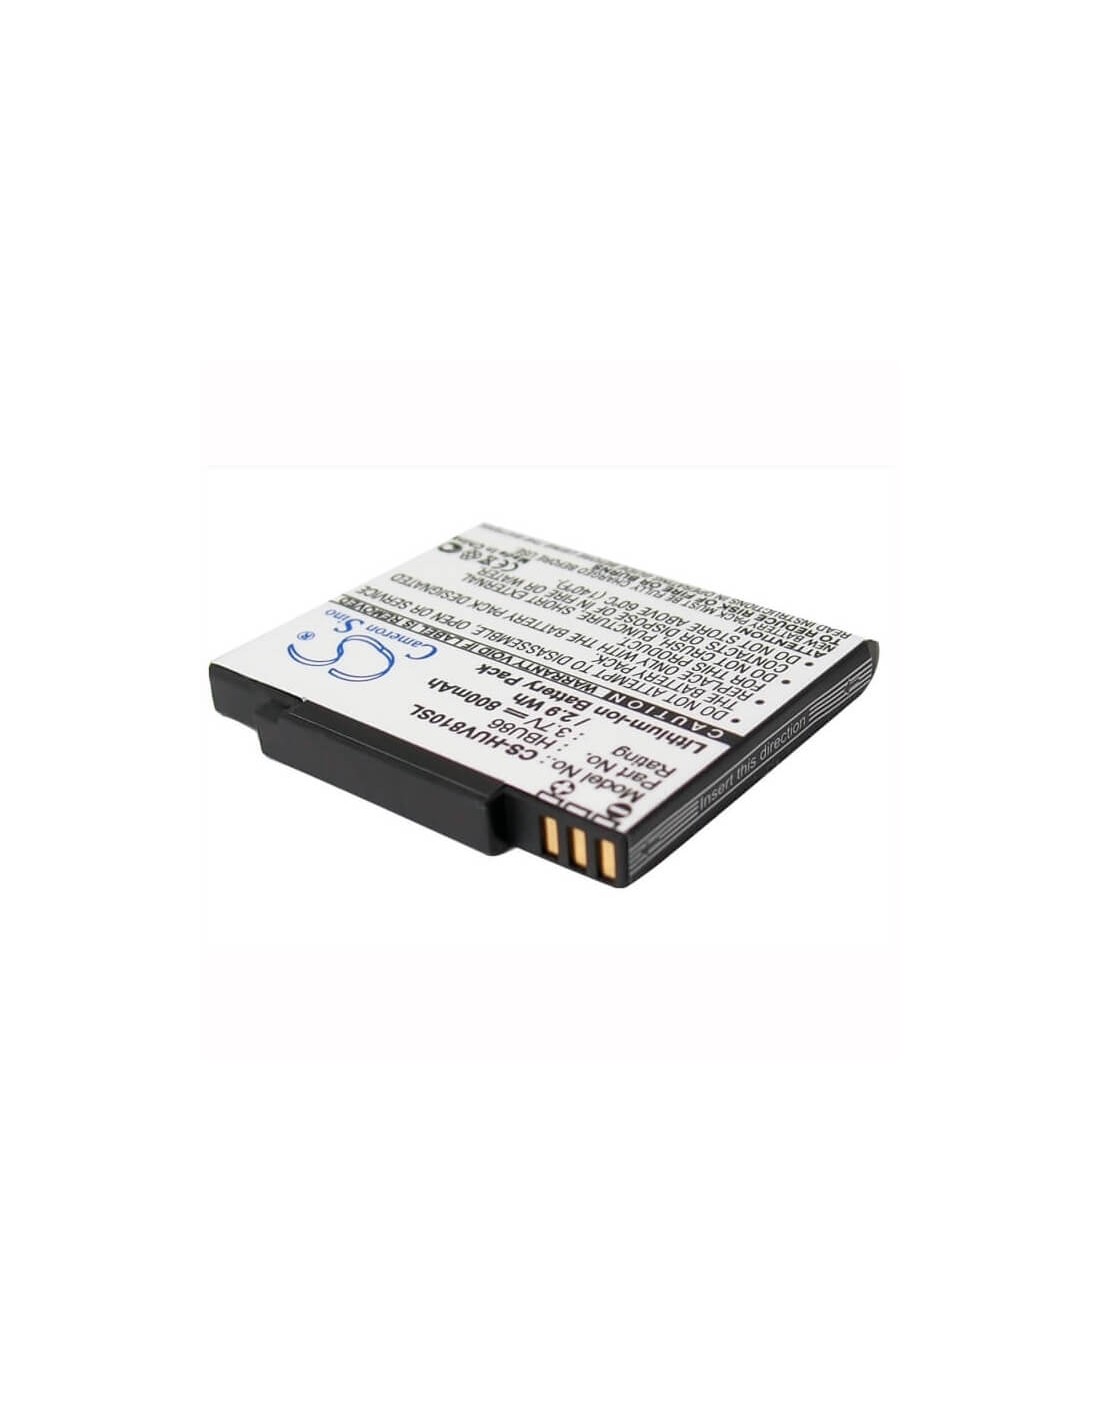 Battery for Huawei V810, T7200, U7200 3.7V, 800mAh - 2.96Wh